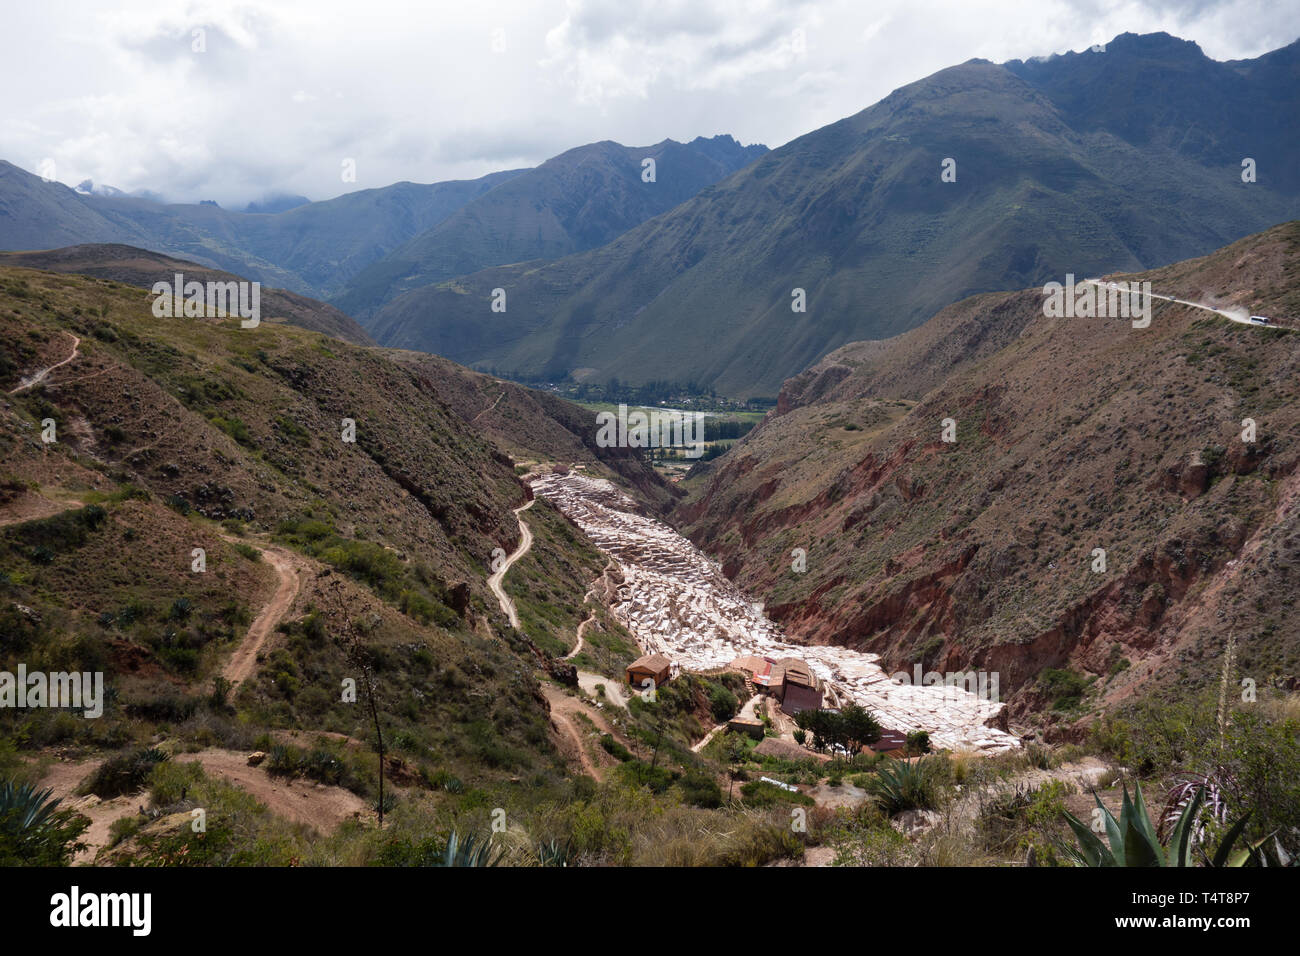 Vue panoramique sur les piscines de la Salinas de Maras, péruvienne traditionnel et célèbre mine de sel, près de Cusco Banque D'Images